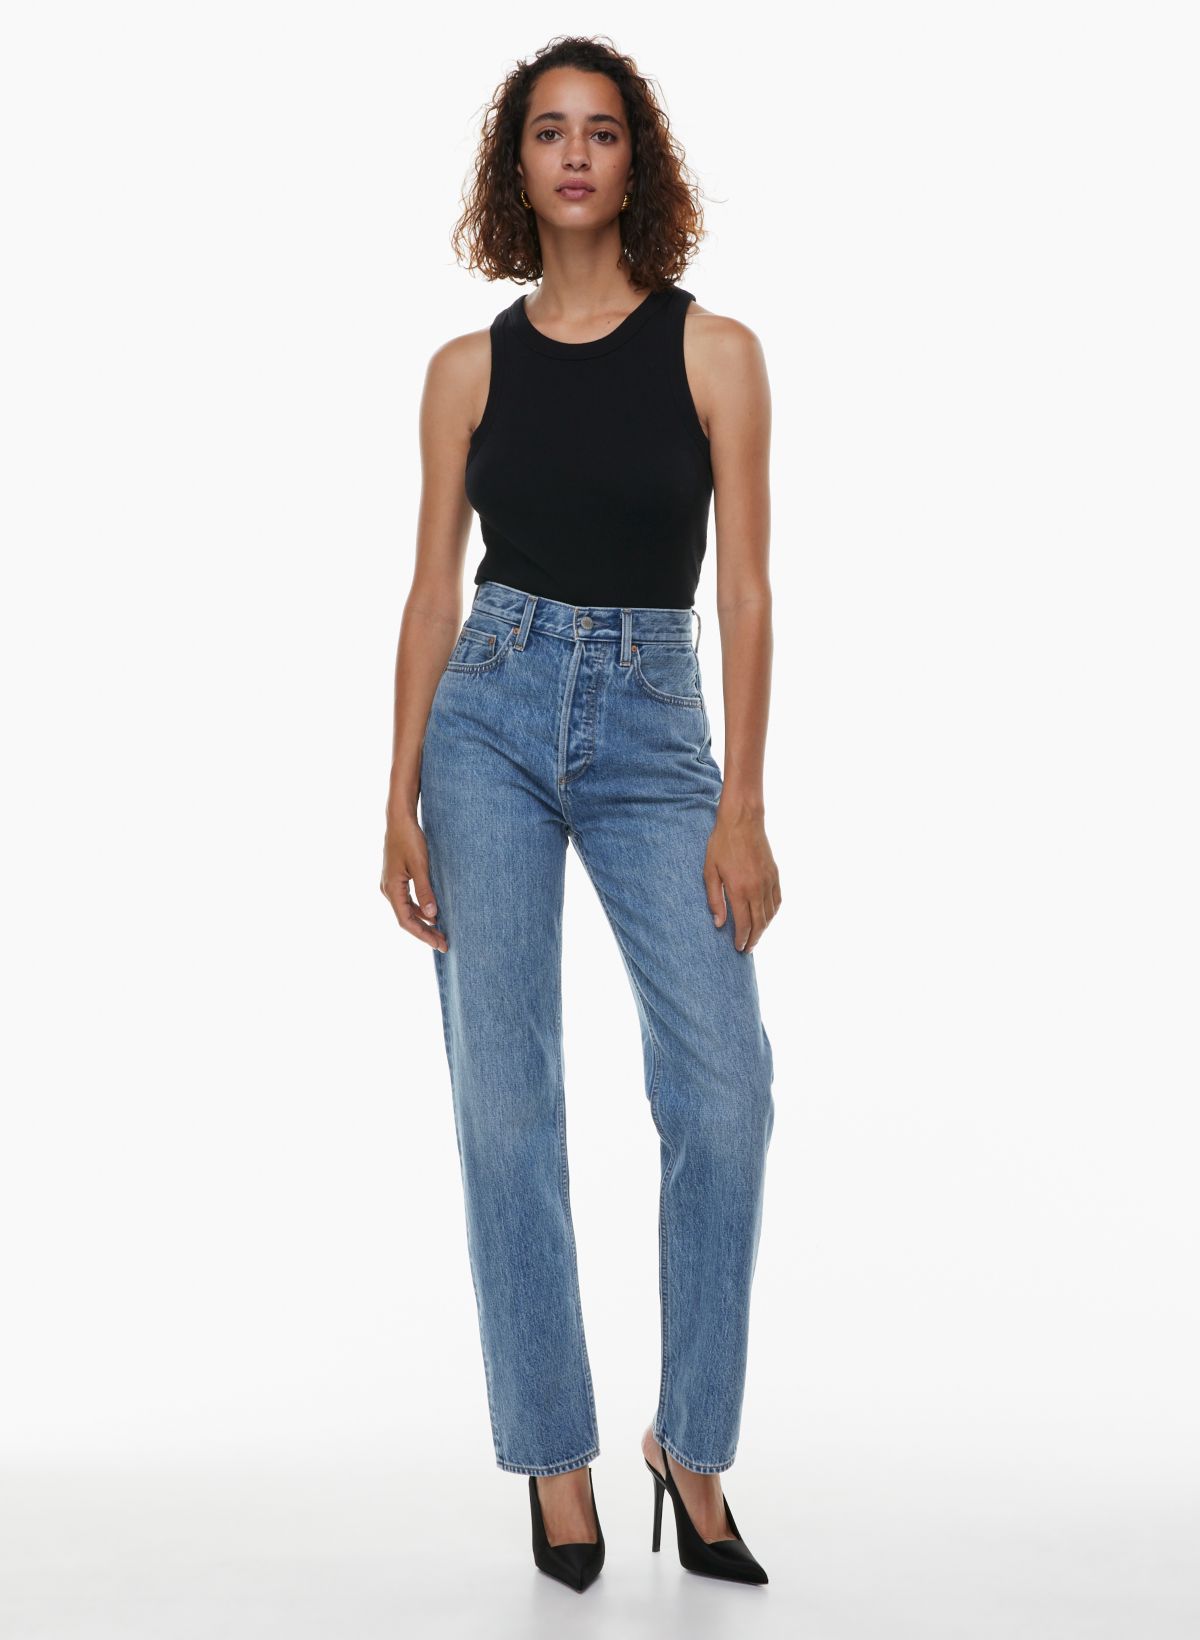 Vintage Calvin Klein High Waist Jeans 32 Waist Tapered Leg 